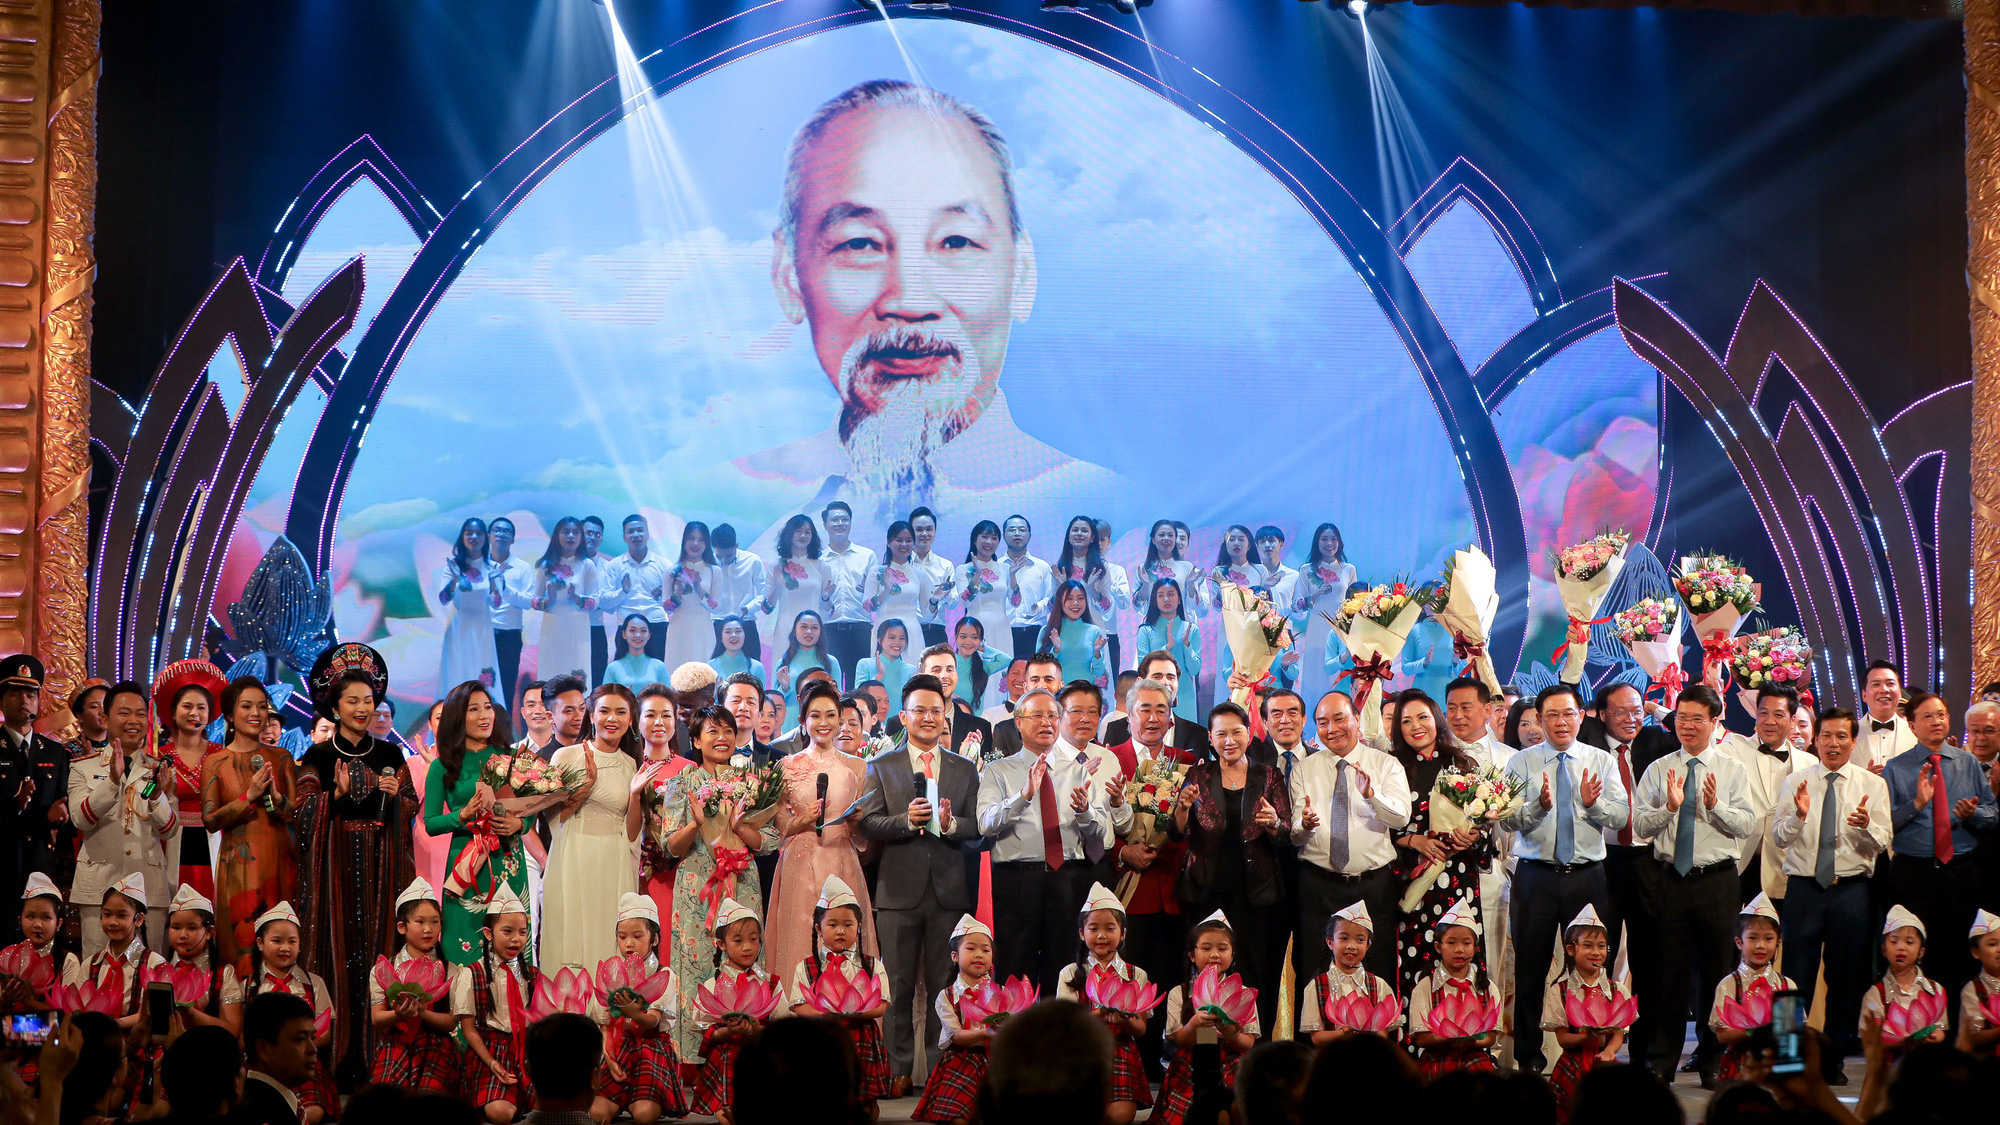 ''Dâng Người tiếng hát mùa xuân'' - món quà ý nghĩa kỷ niệm 130 năm ngày sinh Chủ tịch Hồ Chí Minh